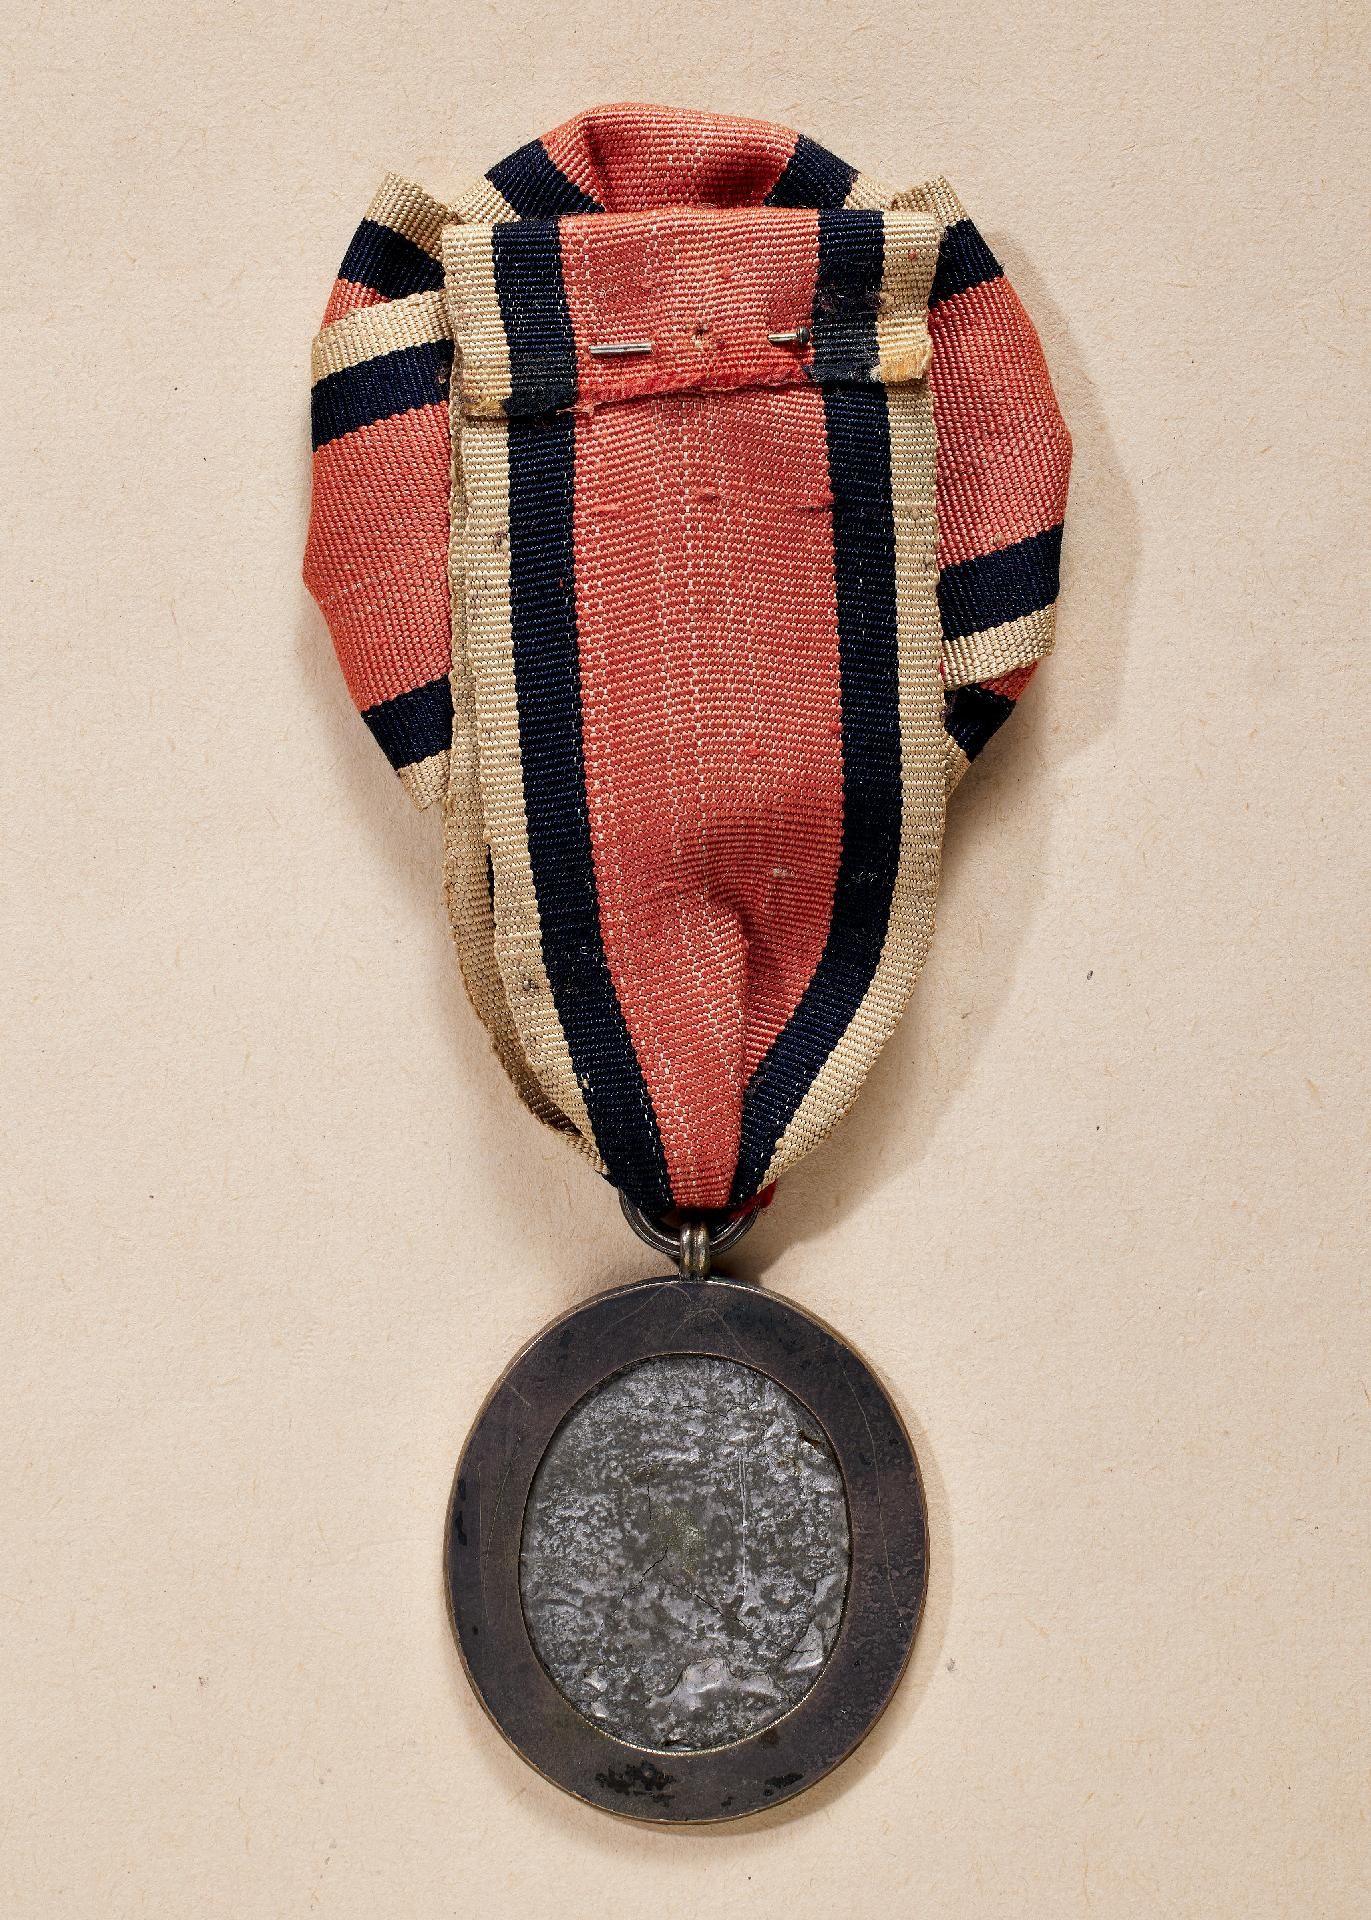 Frankreich : Insignie der Vereinigung der Eroberer der Bastille (Médaille - Insigne de L'Associa... - Image 2 of 2